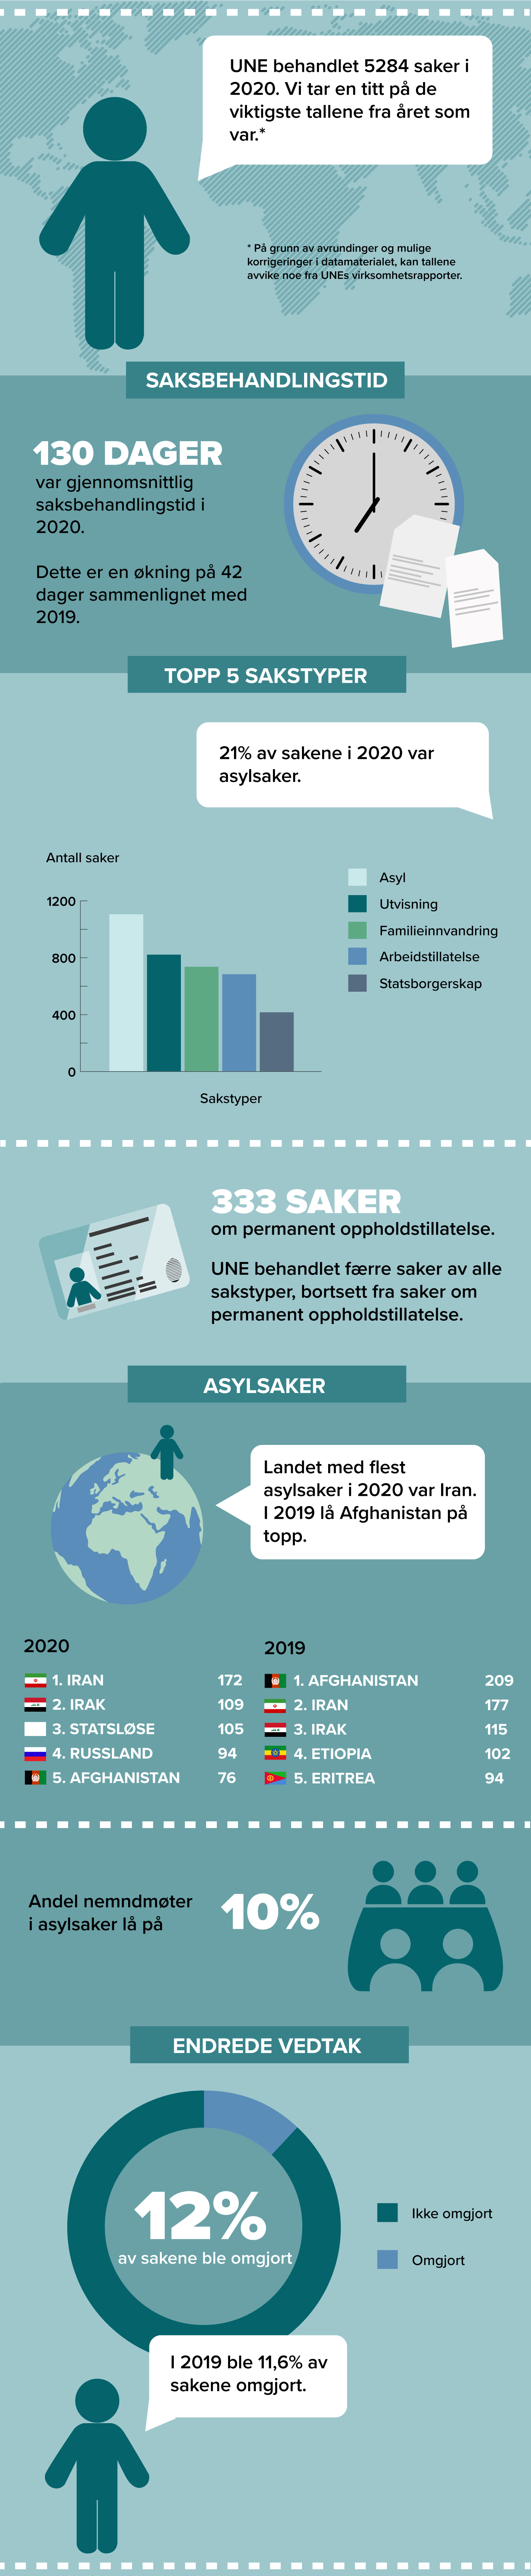 infografikk_statistikk_test9